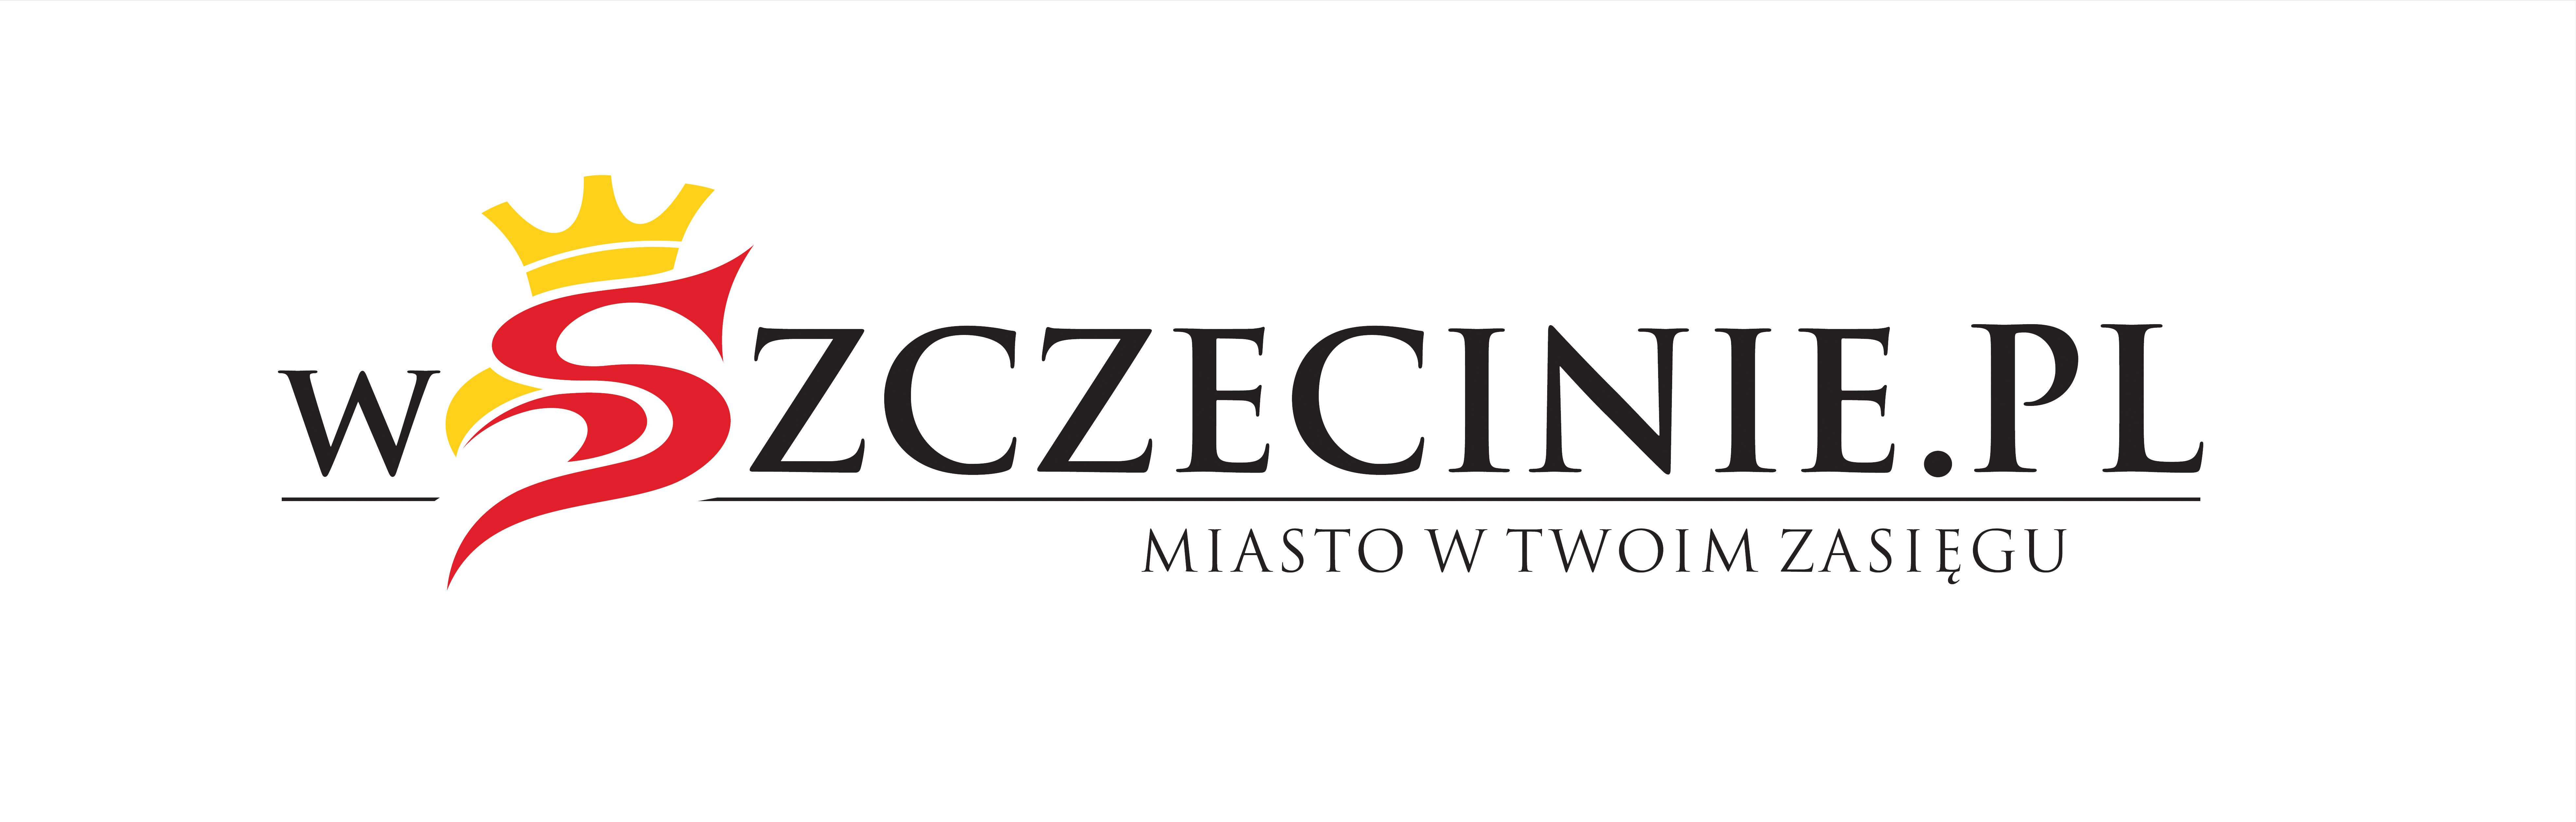 wszczecinie.pl